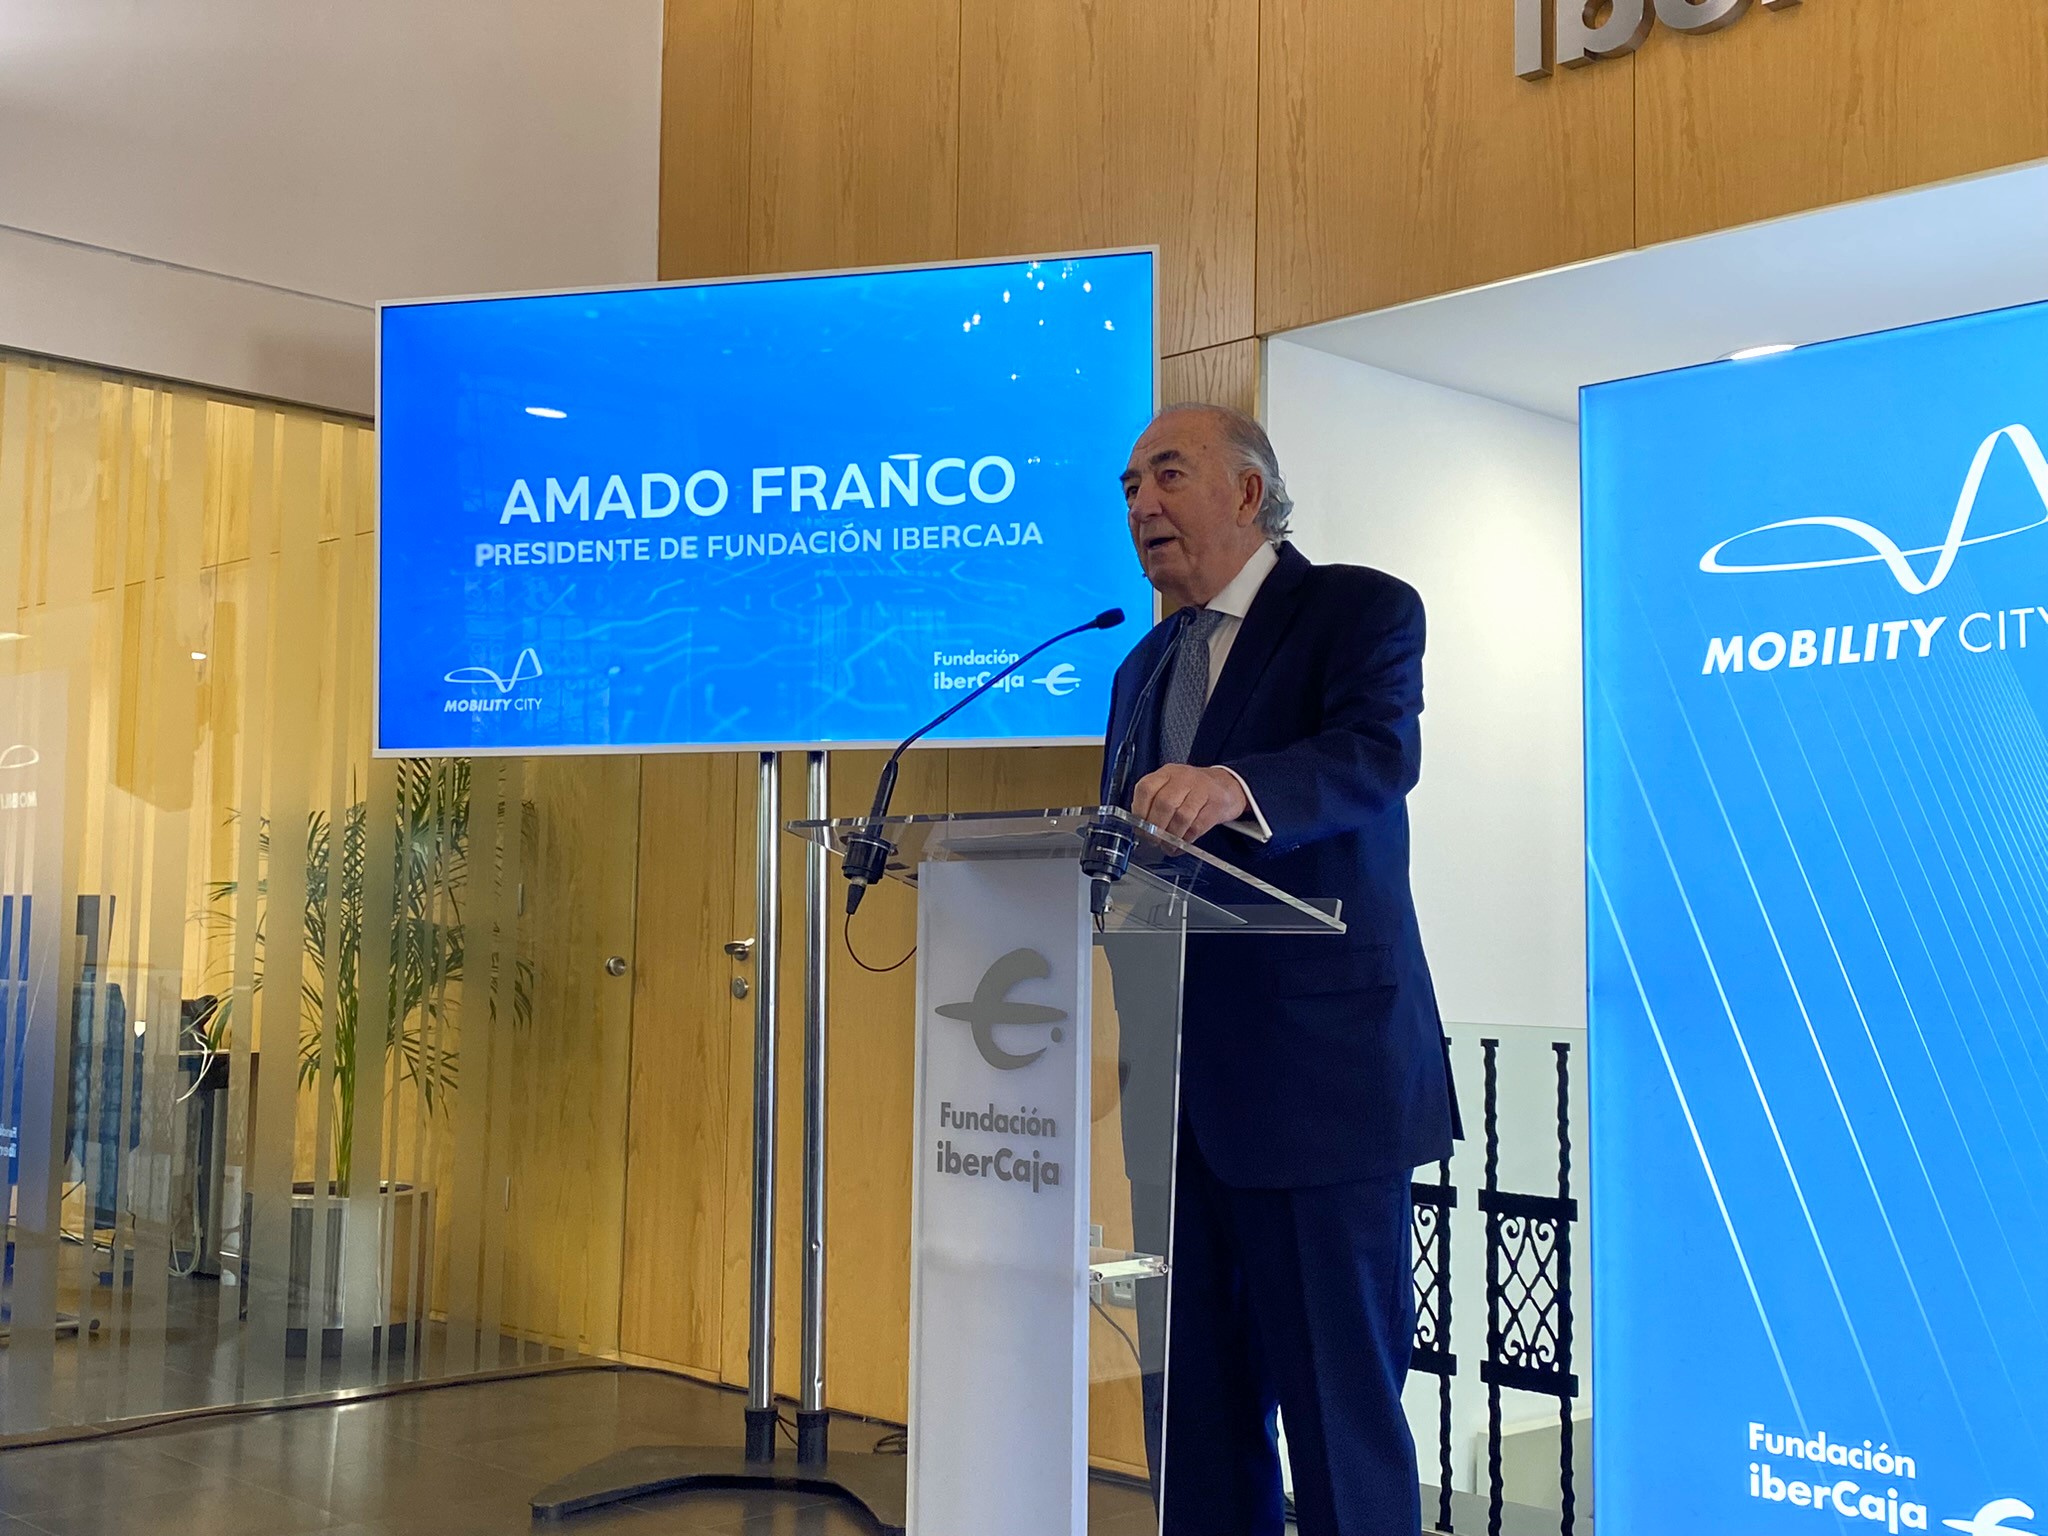 Amado Franco, Presidente de Fundación Ibercaja, en la rueda de prensa de presentación de Mobility City